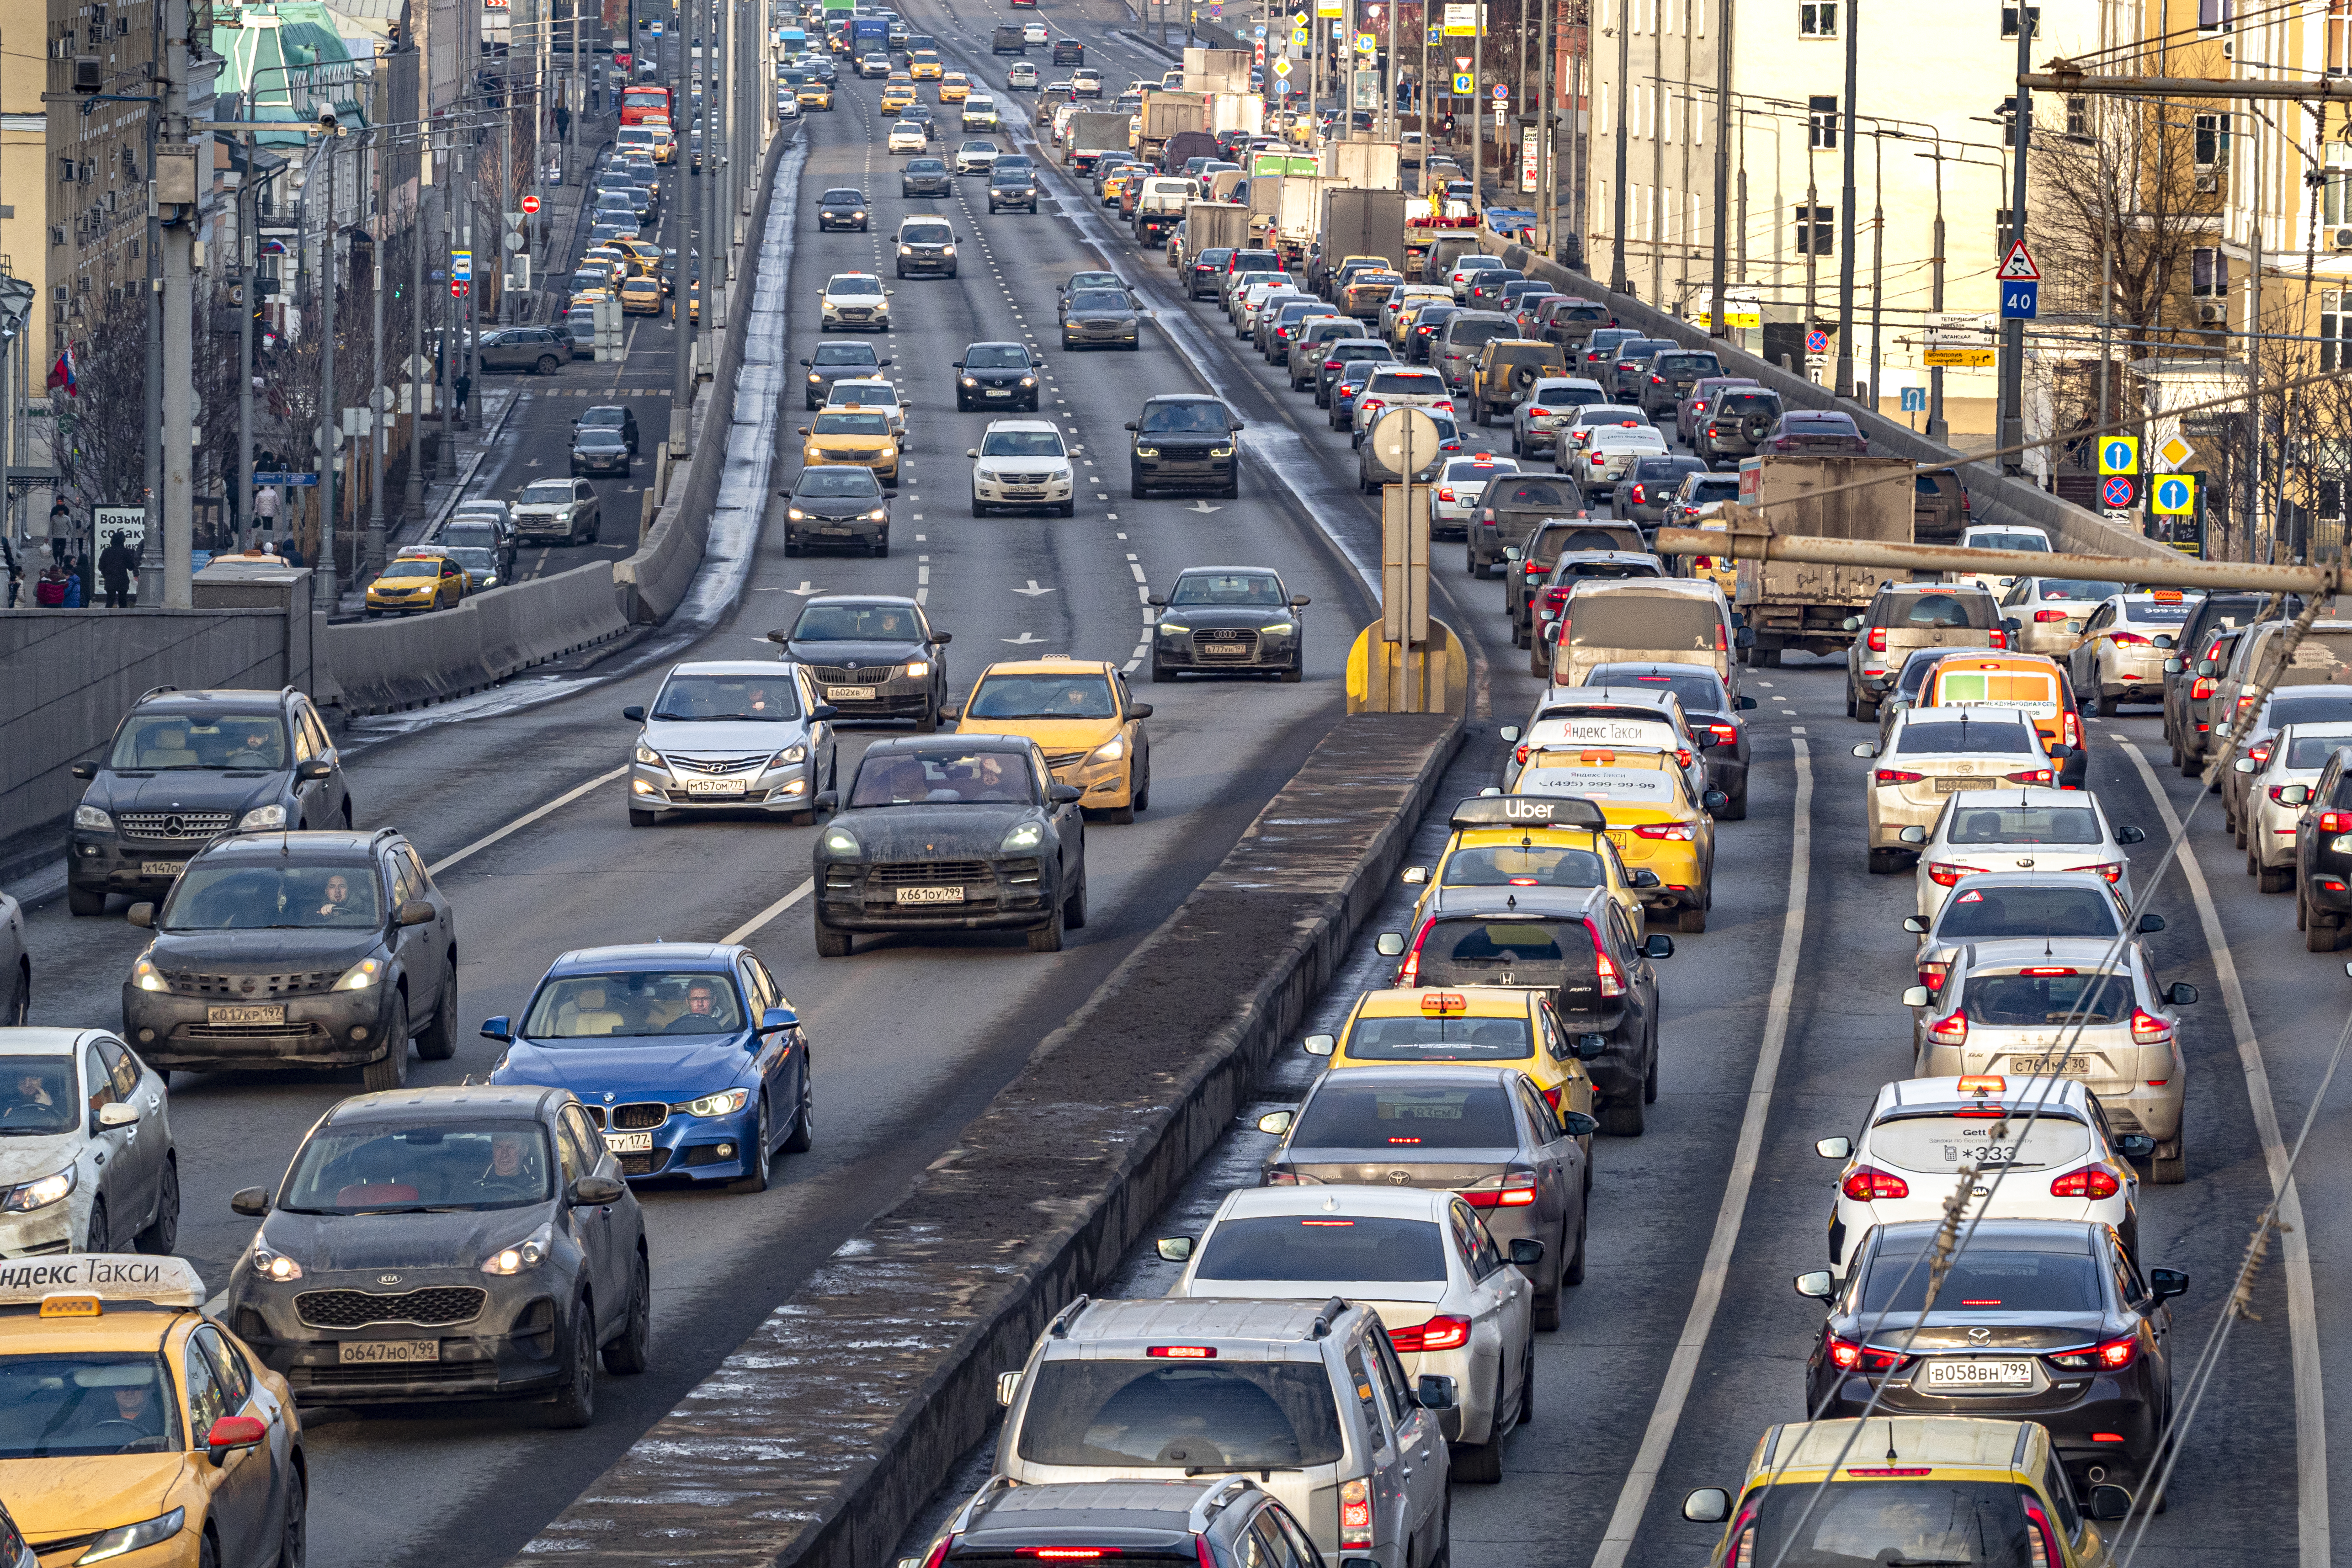 Эксперты отметили, что проблему повышенной загруженности парковочных мест необходимо начинать решать в ближайшее время Фото: © Global Look Press / Konstantin Kokoshkin